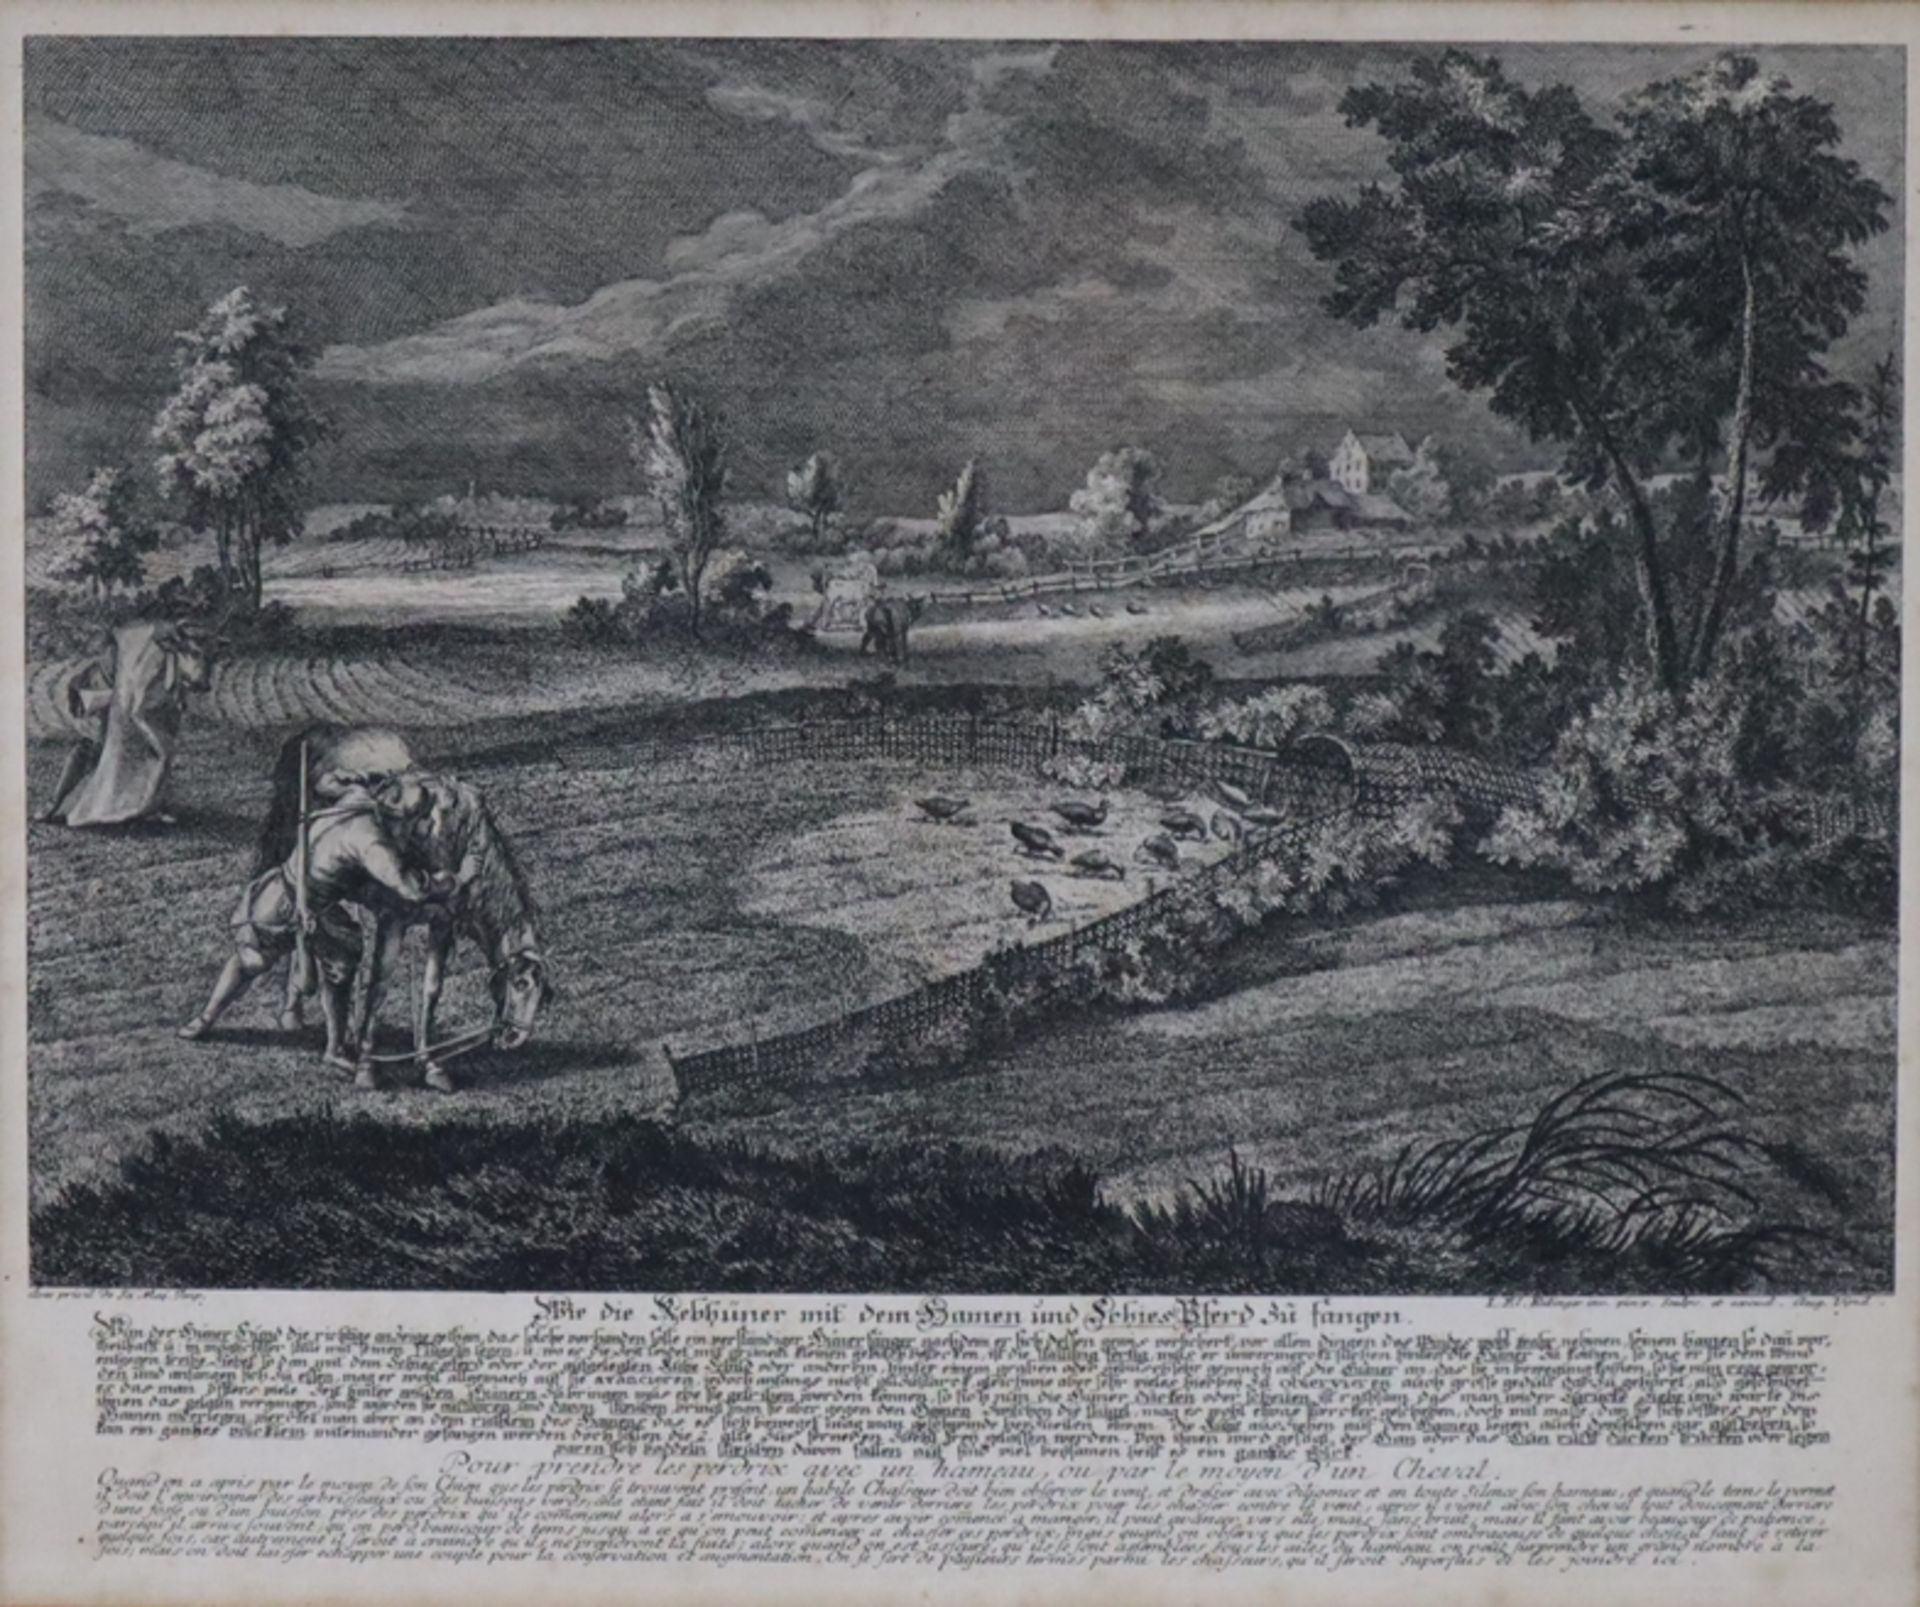 Ridinger, Joh. Elias (1698-1767 Augsburg) - "Wie die Rebhühner mit dem Hamen und Schies Pferd zu fa